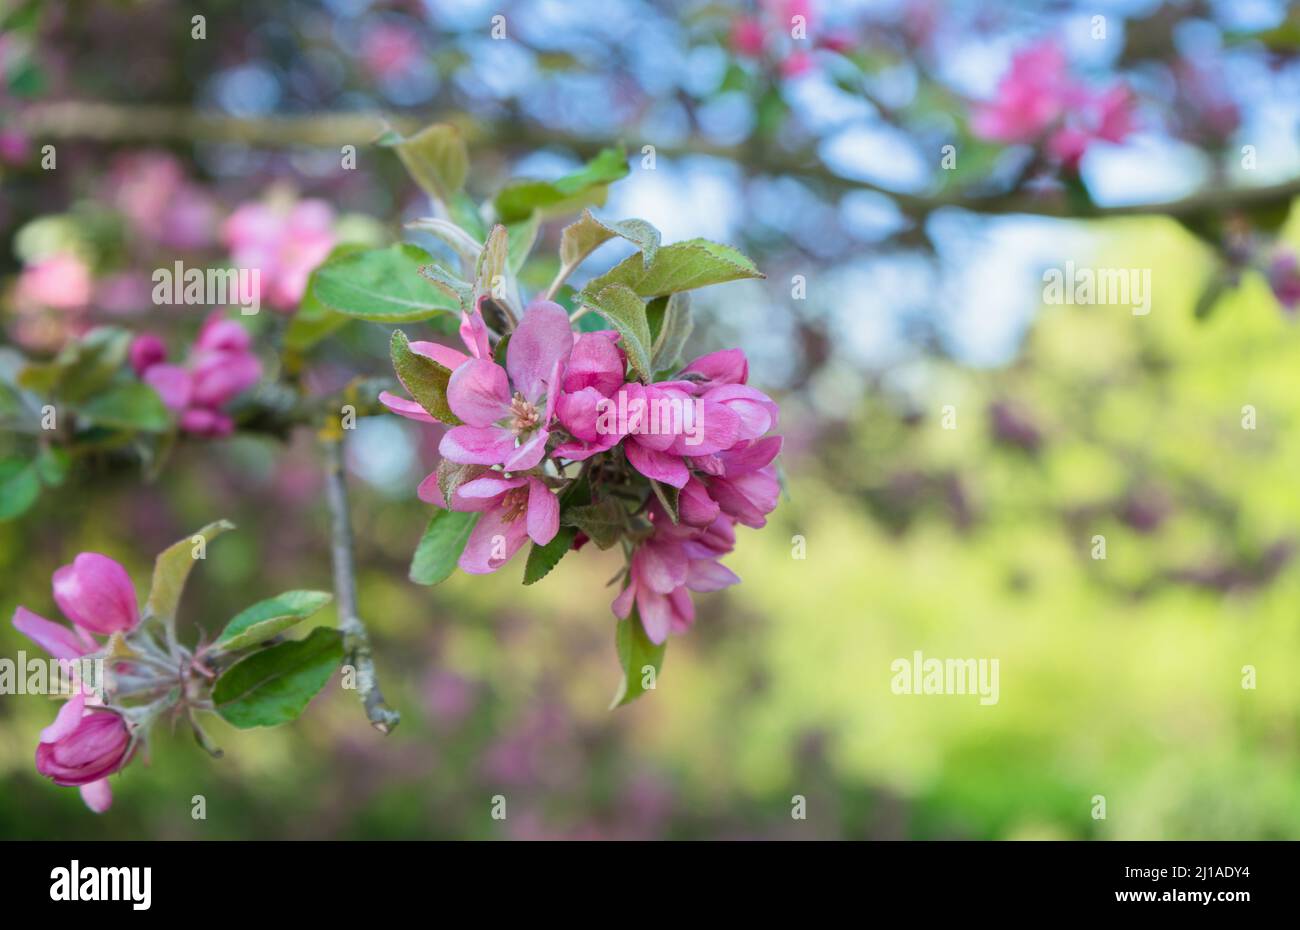 Malus niedzwetzkyana, or Niedzwetzky's apple tree branch with flowers at springtime Stock Photo